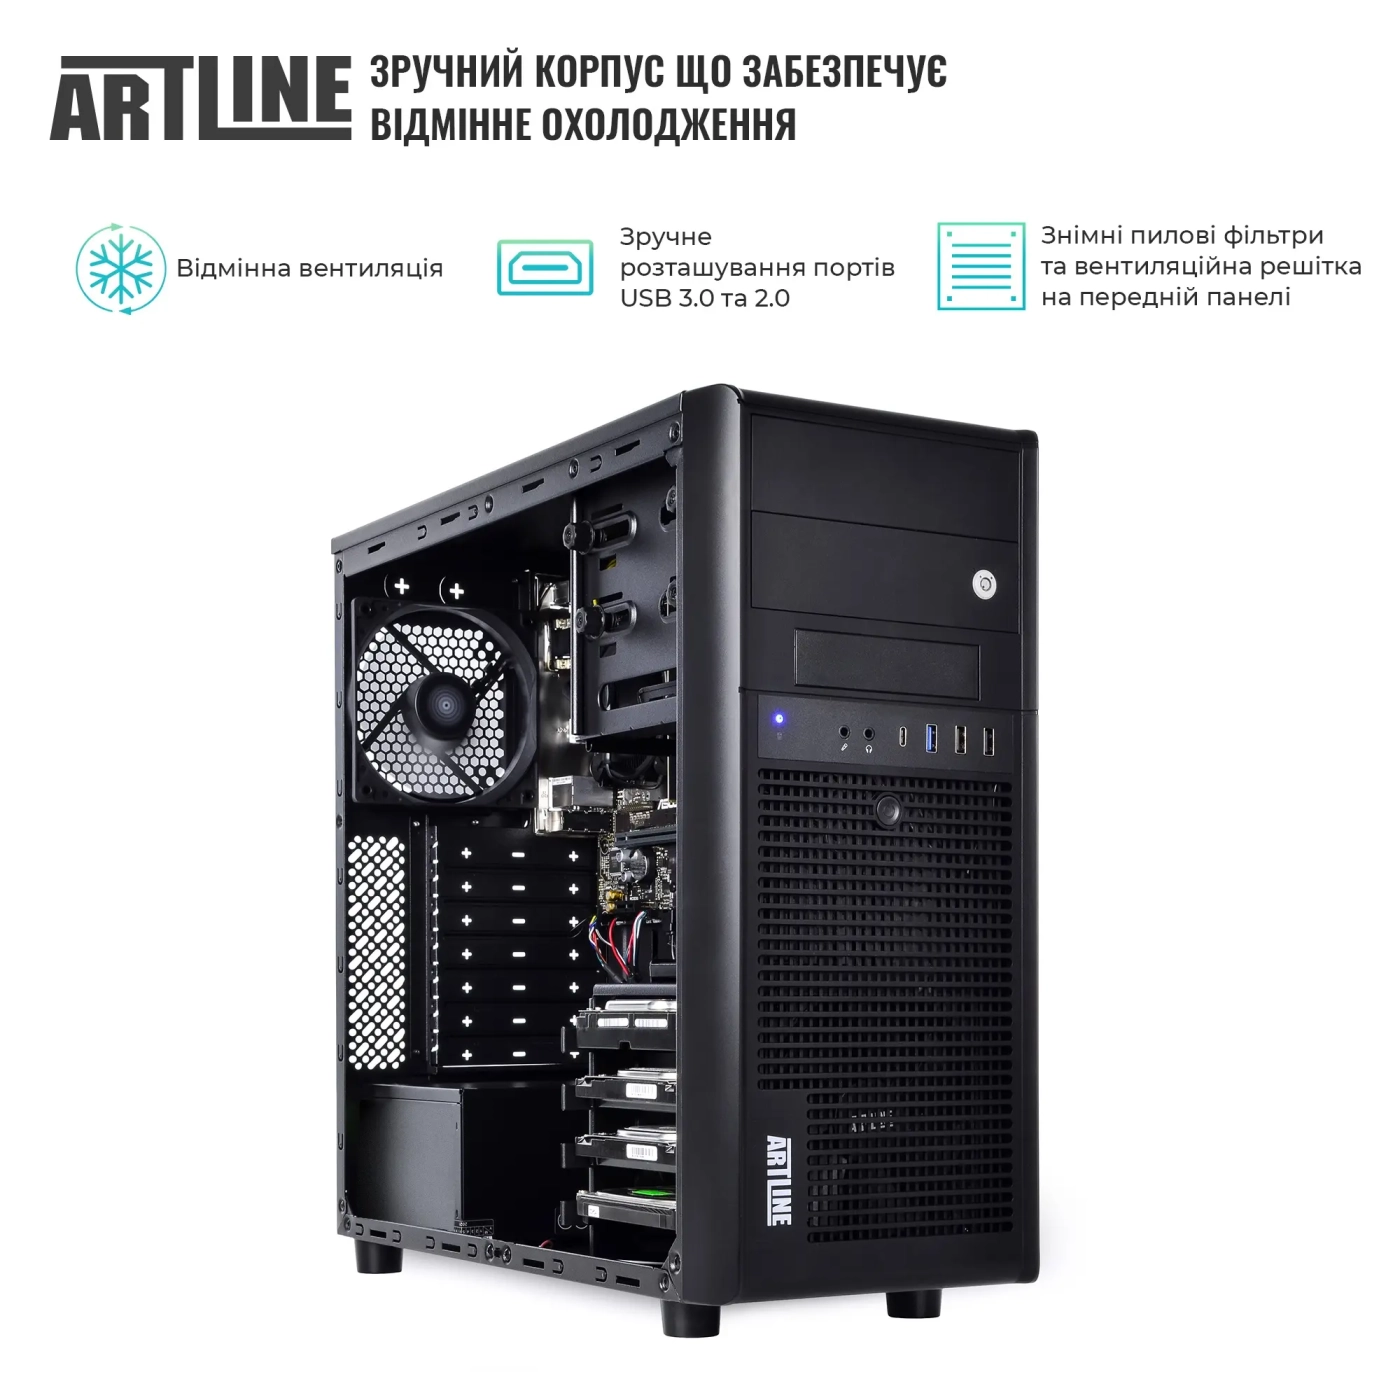 Купить Сервер ARTLINE Business T38 (T38v20) - фото 3